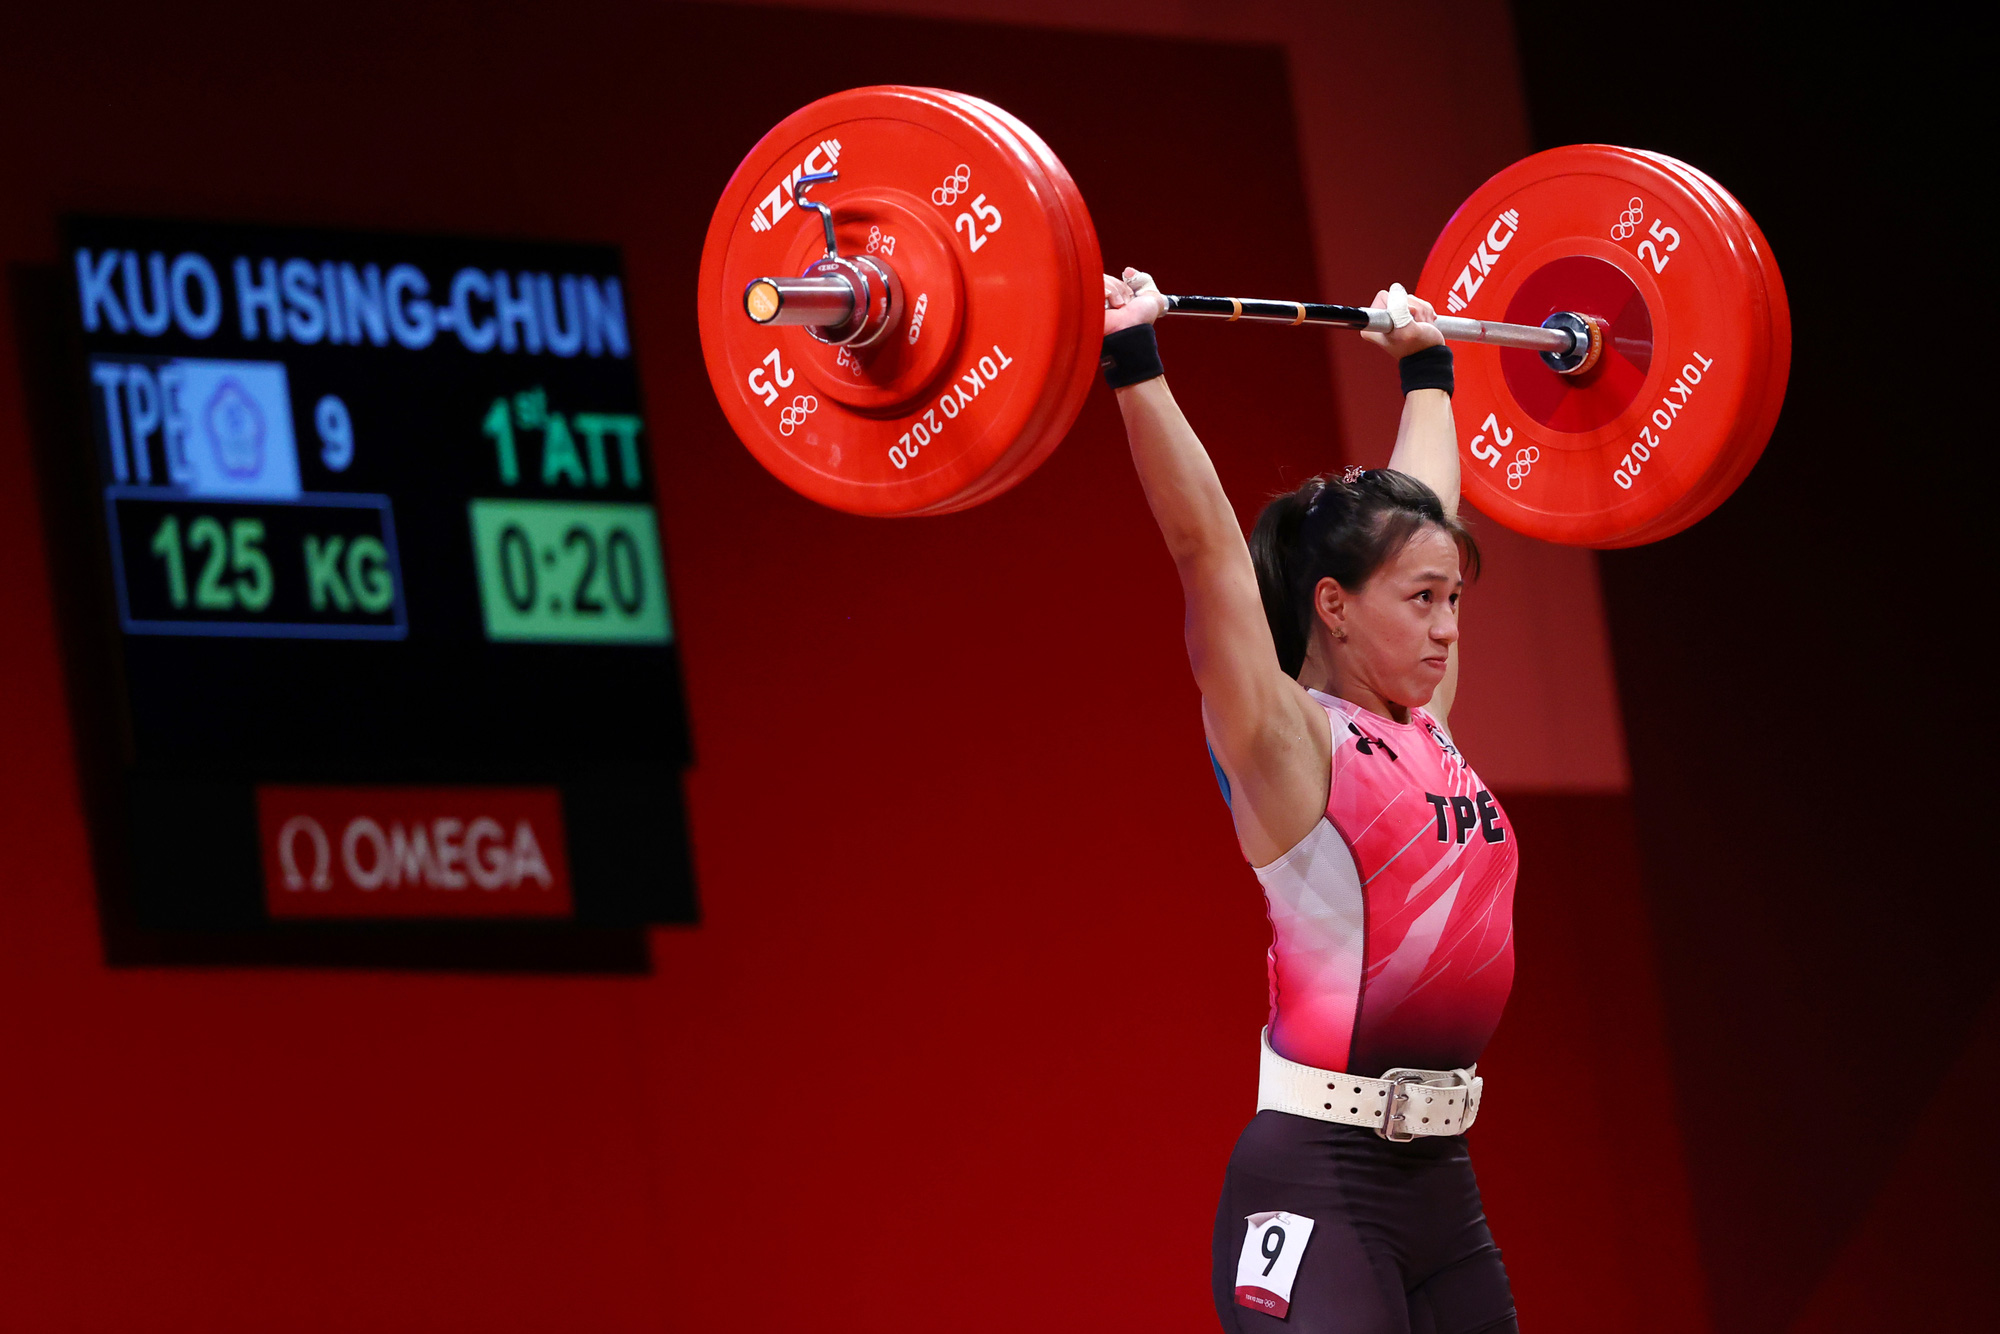 Olympic Tokyo ngày 27-7: Nguyễn Huy Hoàng thua vẫn làm nức lòng người hâm mộ - Ảnh 7.